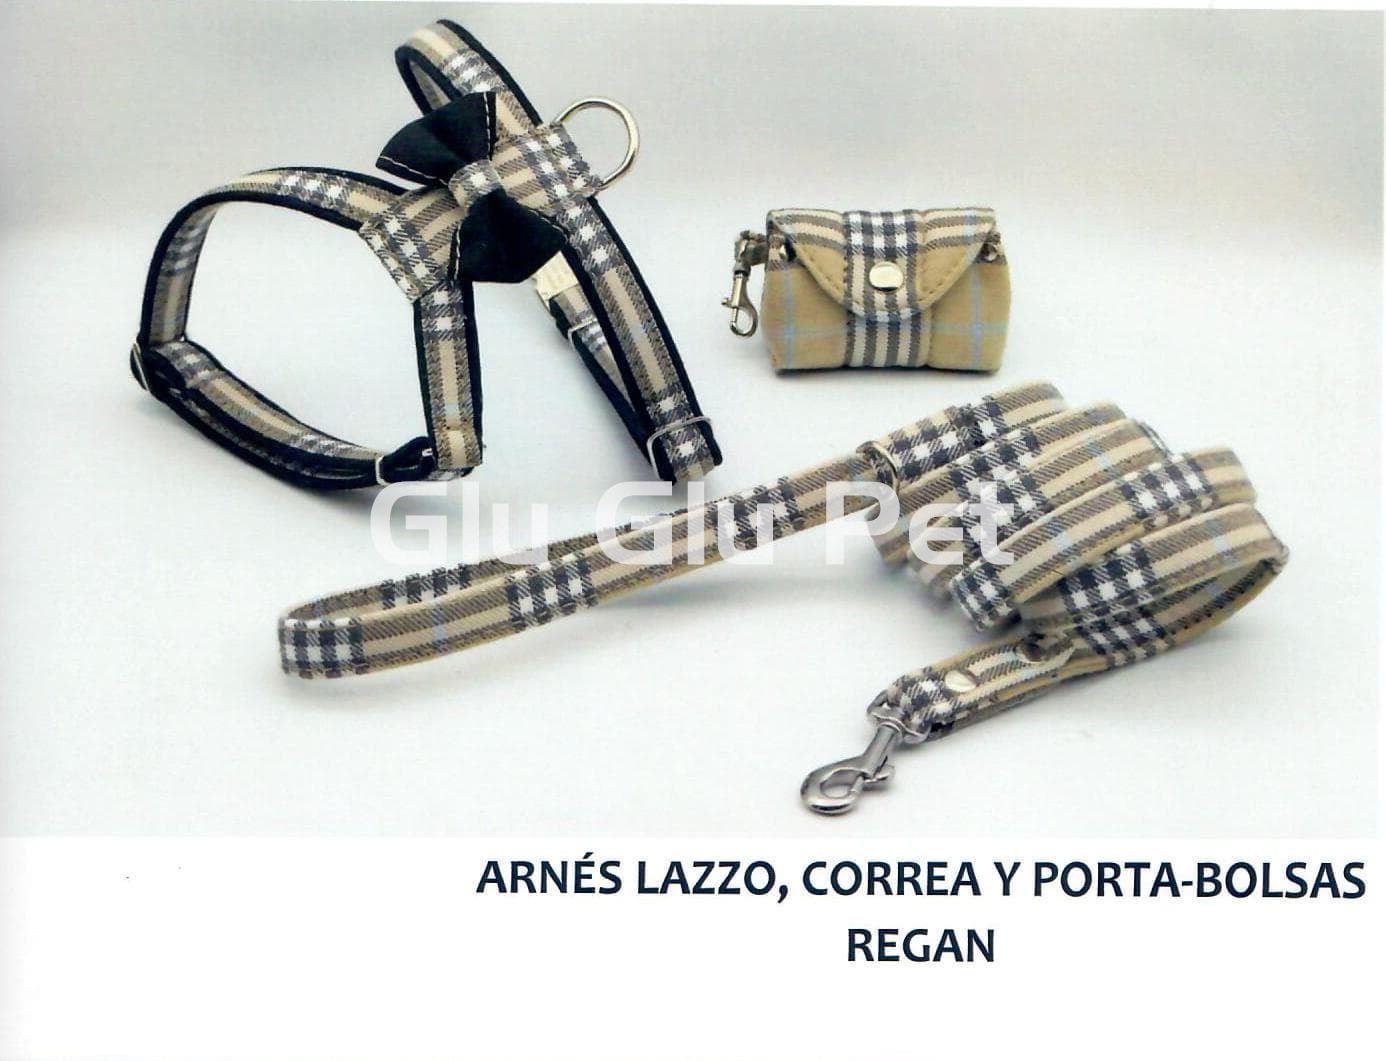 Regan model bag holder - Image 1